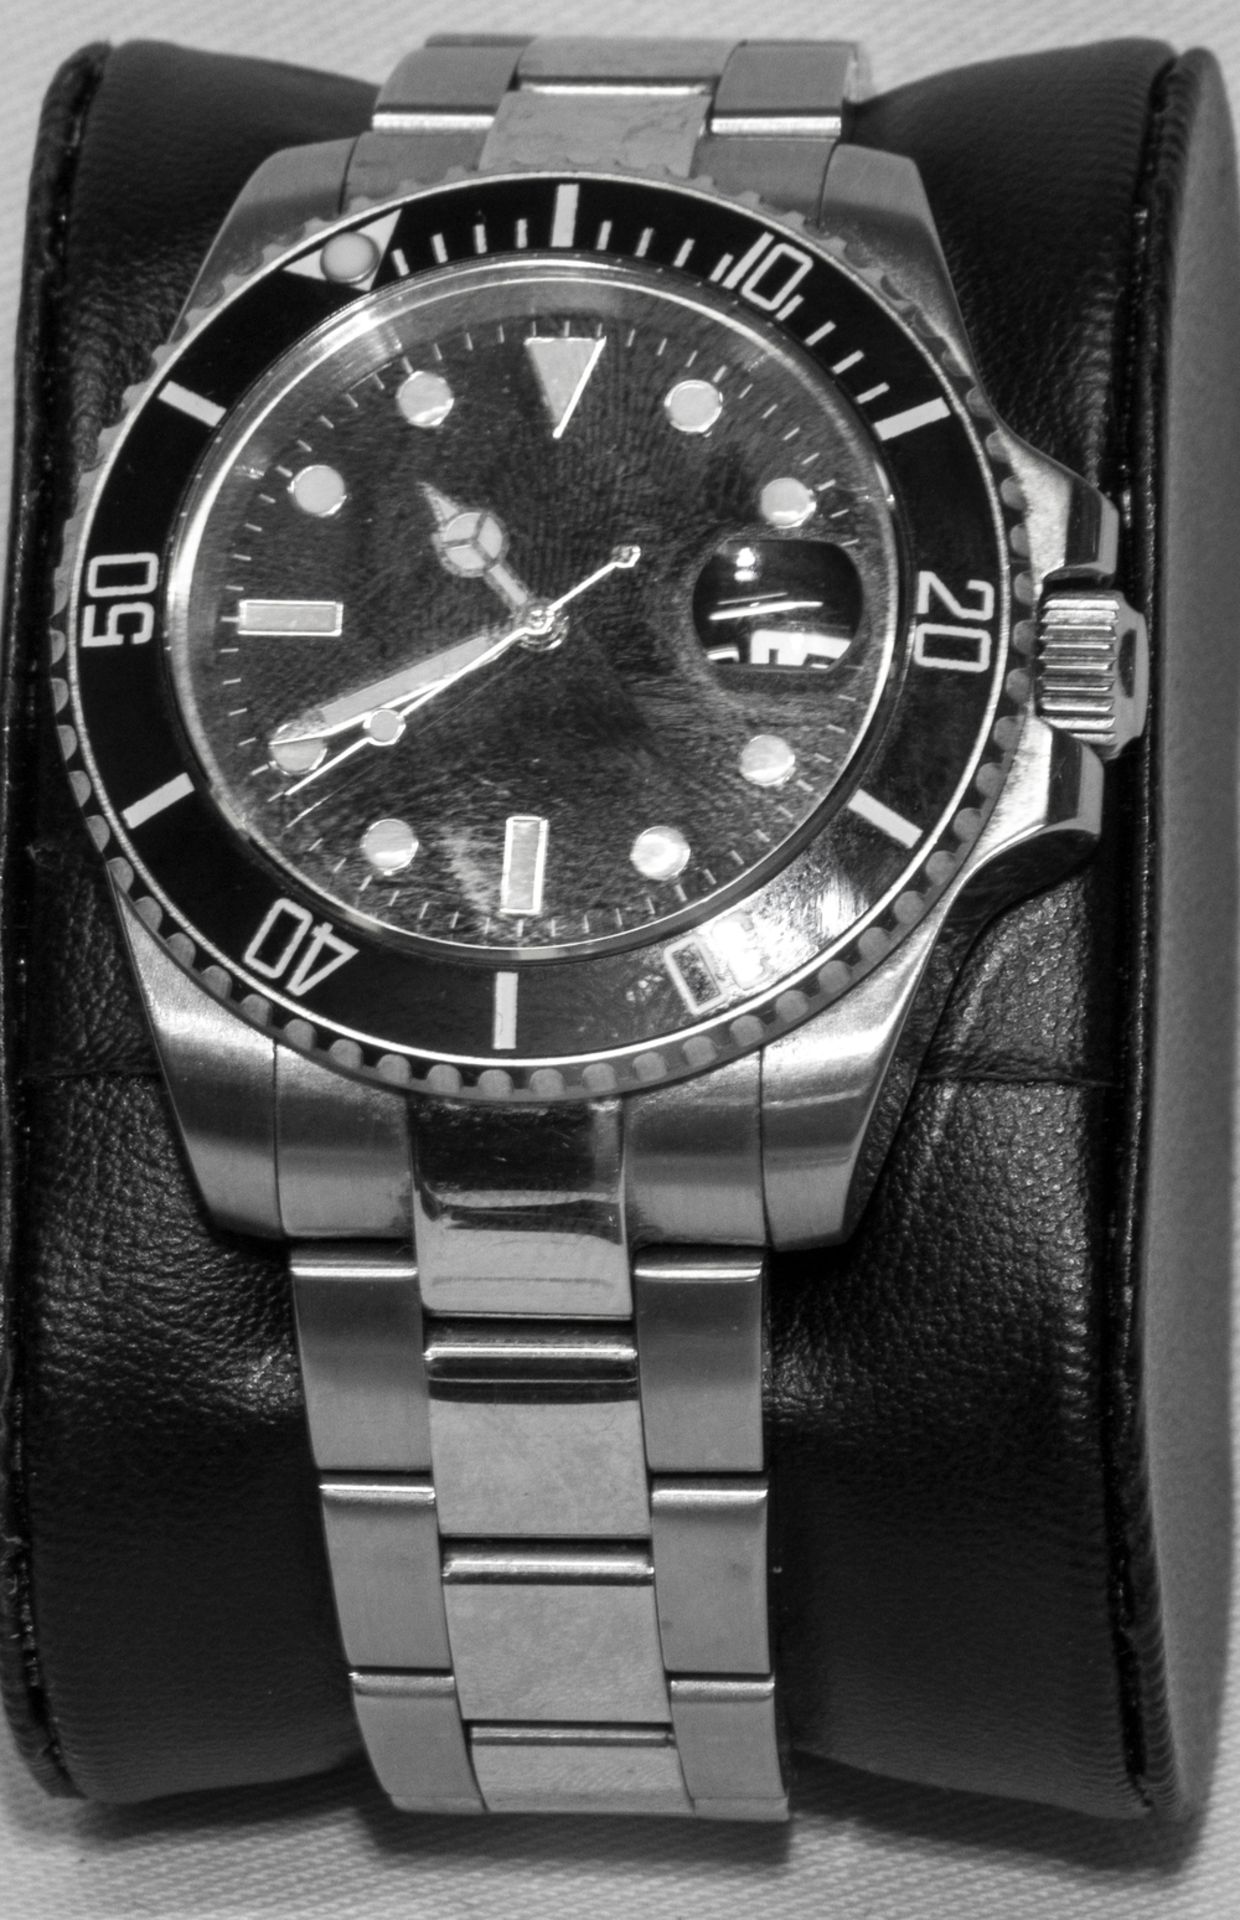 Parnis Herren - Armbanduhr, kein Markenlogo auf der Uhr. In original OVP.